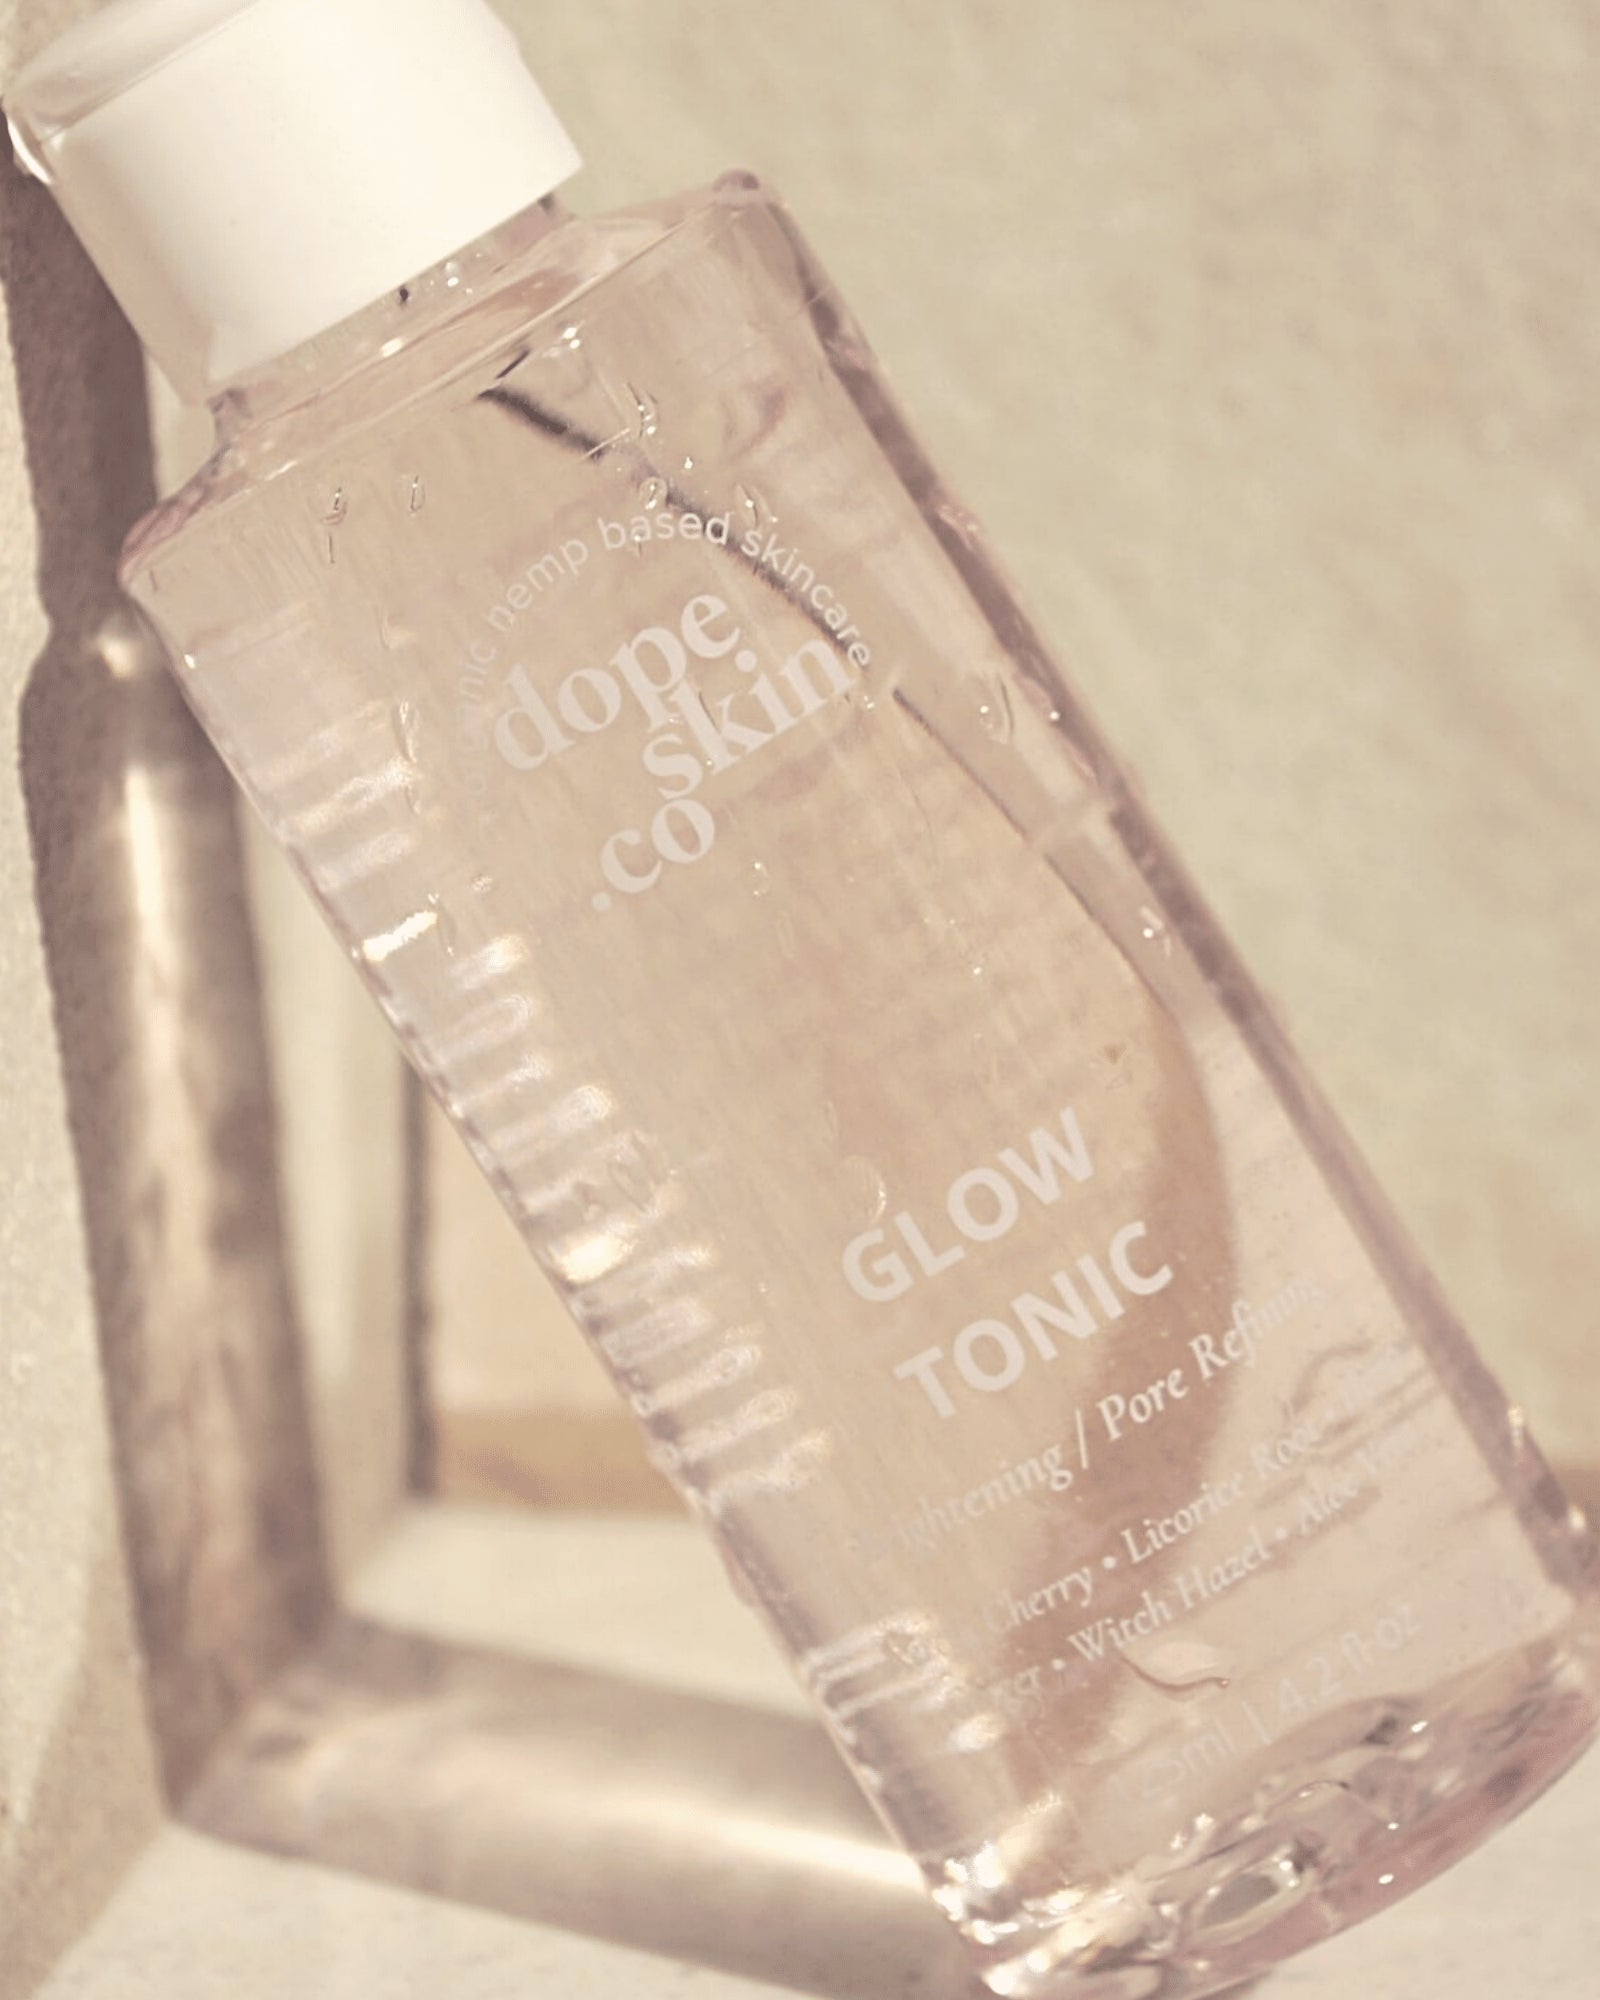 Dope Skin Co - Glow Tonic